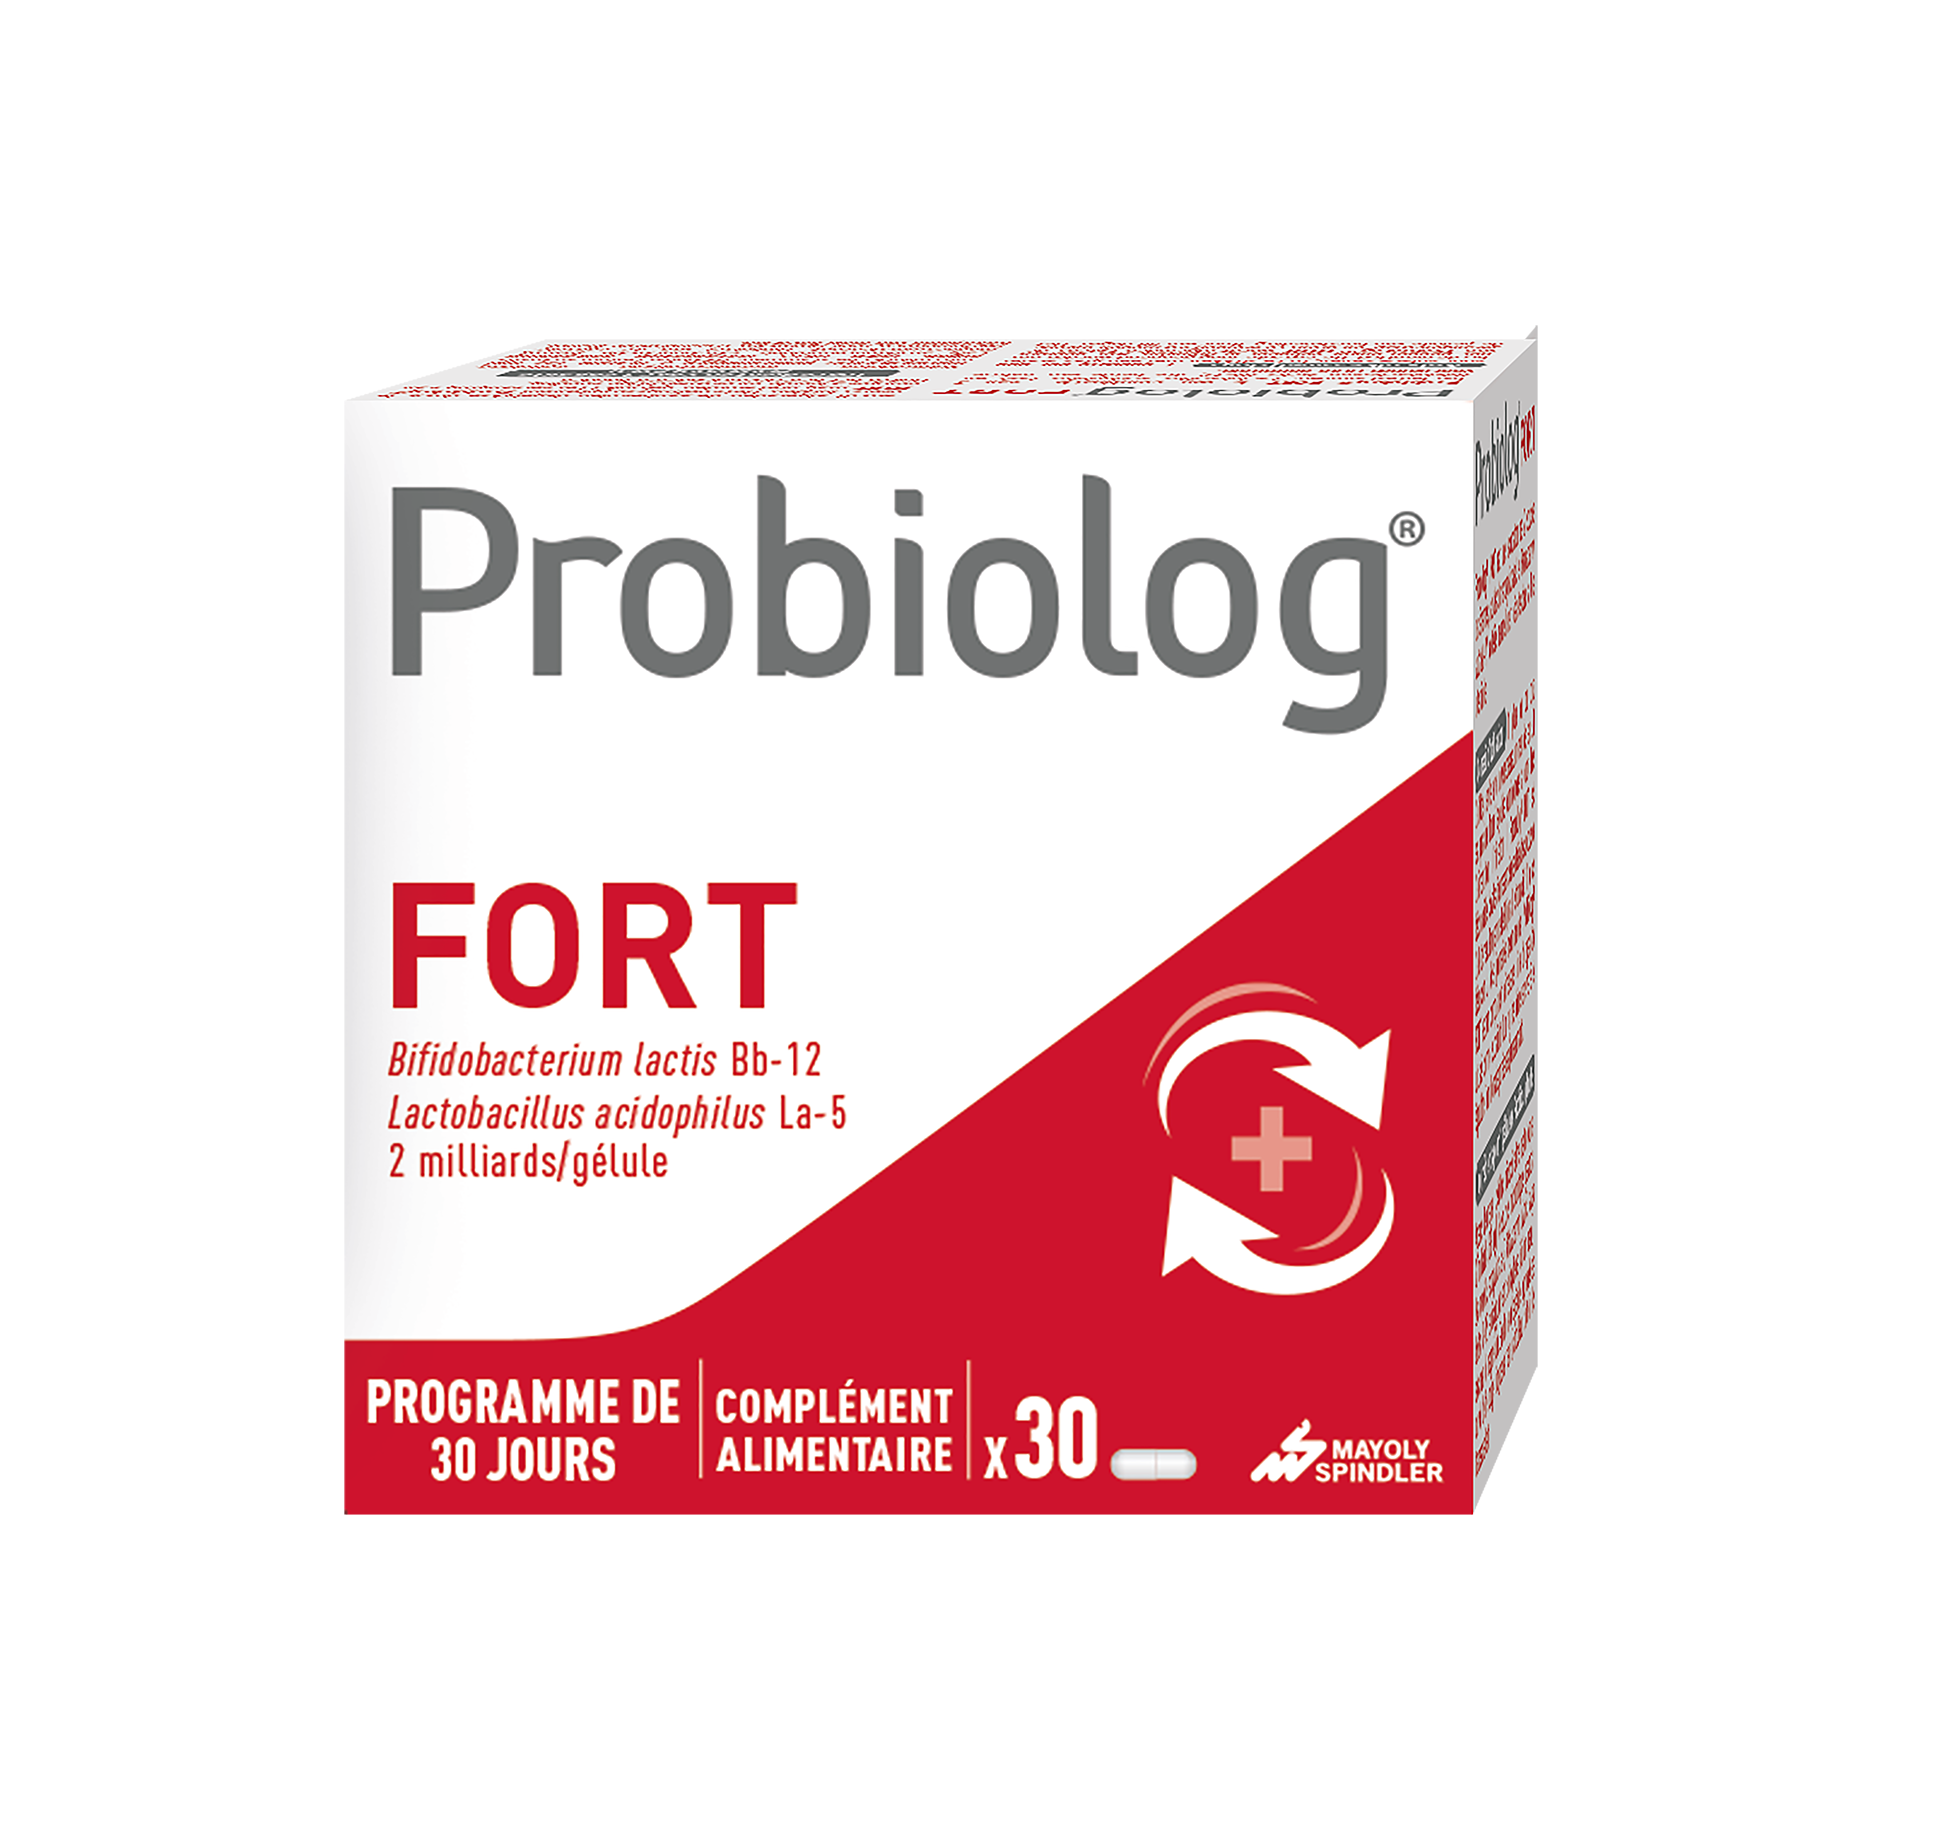 Probiolog Fort Mayoly Spindler - boite de 30 gélules